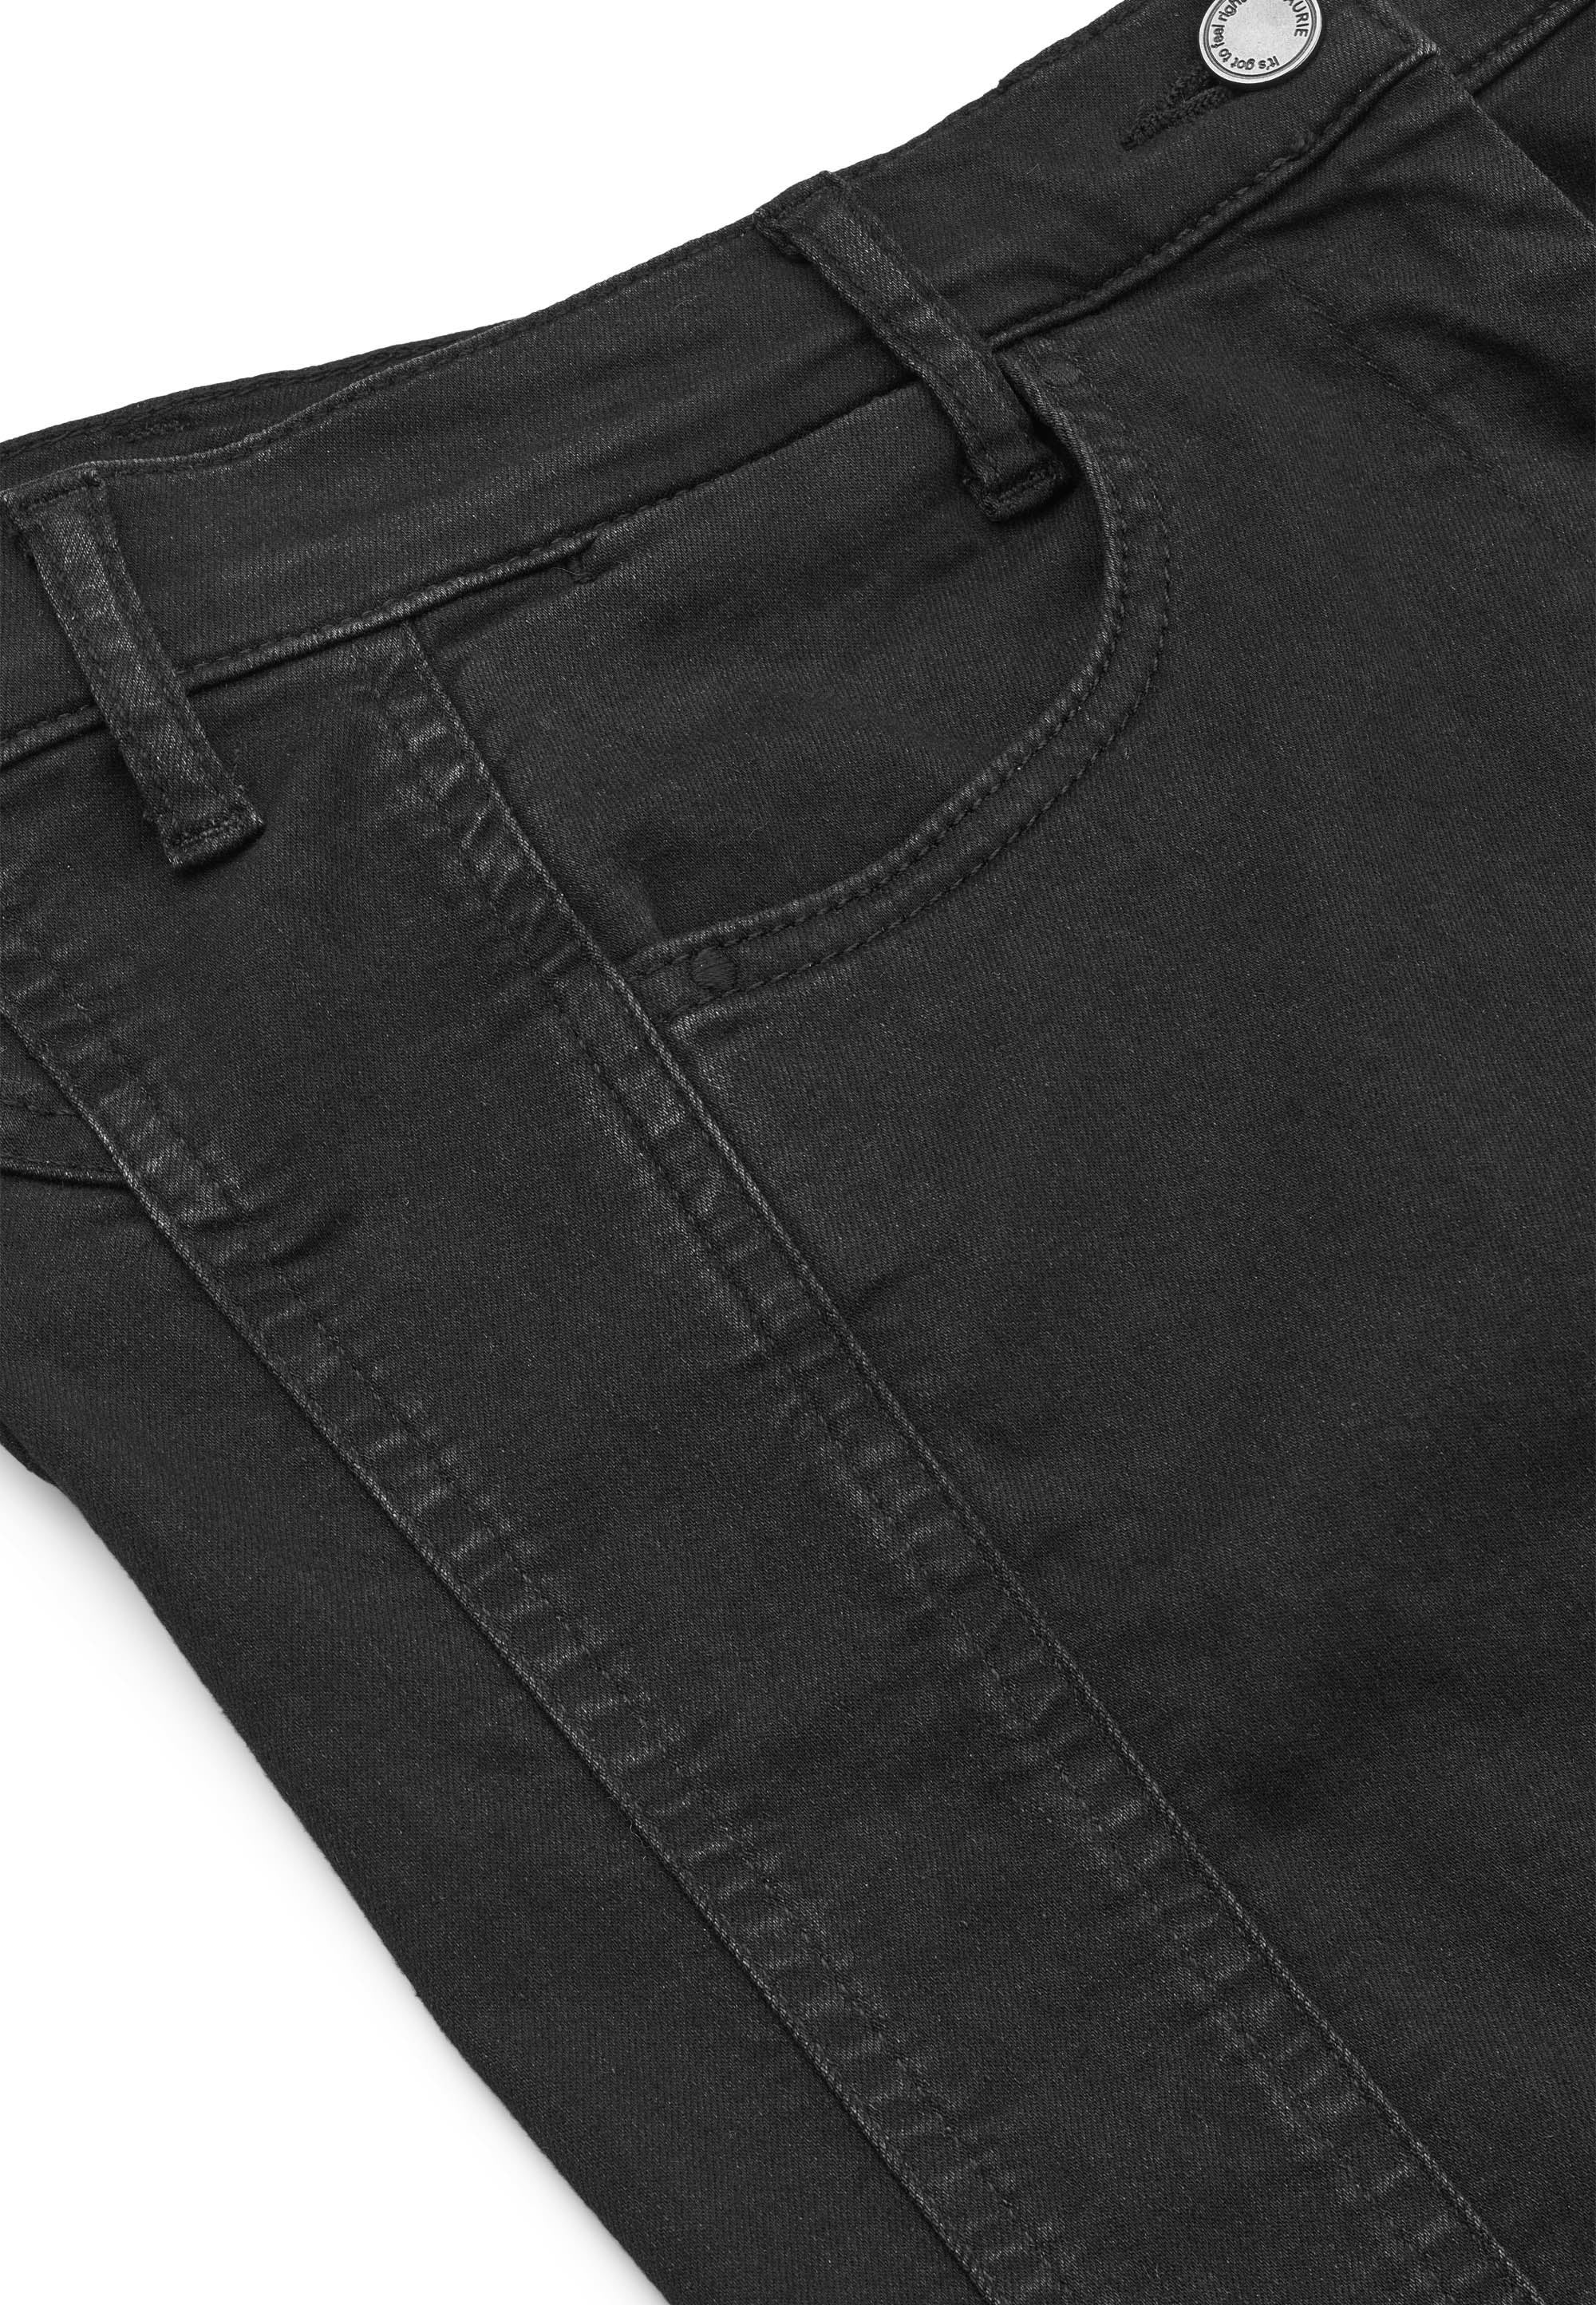 LAURIE Serene 5-pocket Slim - Short Length Trousers SLIM 99000 Black